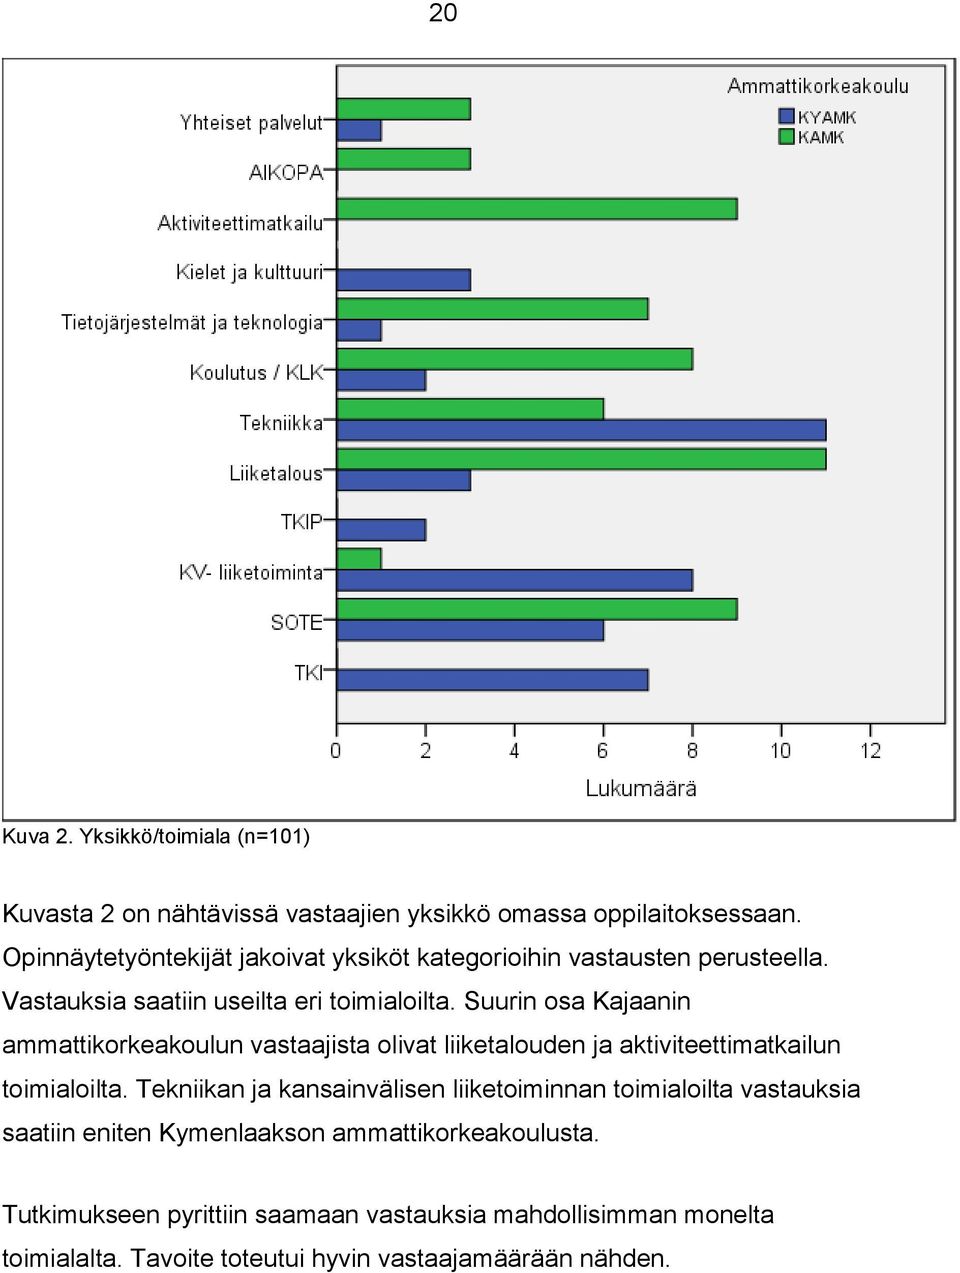 Suurin osa Kajaanin ammattikorkeakoulun vastaajista olivat liiketalouden ja aktiviteettimatkailun toimialoilta.